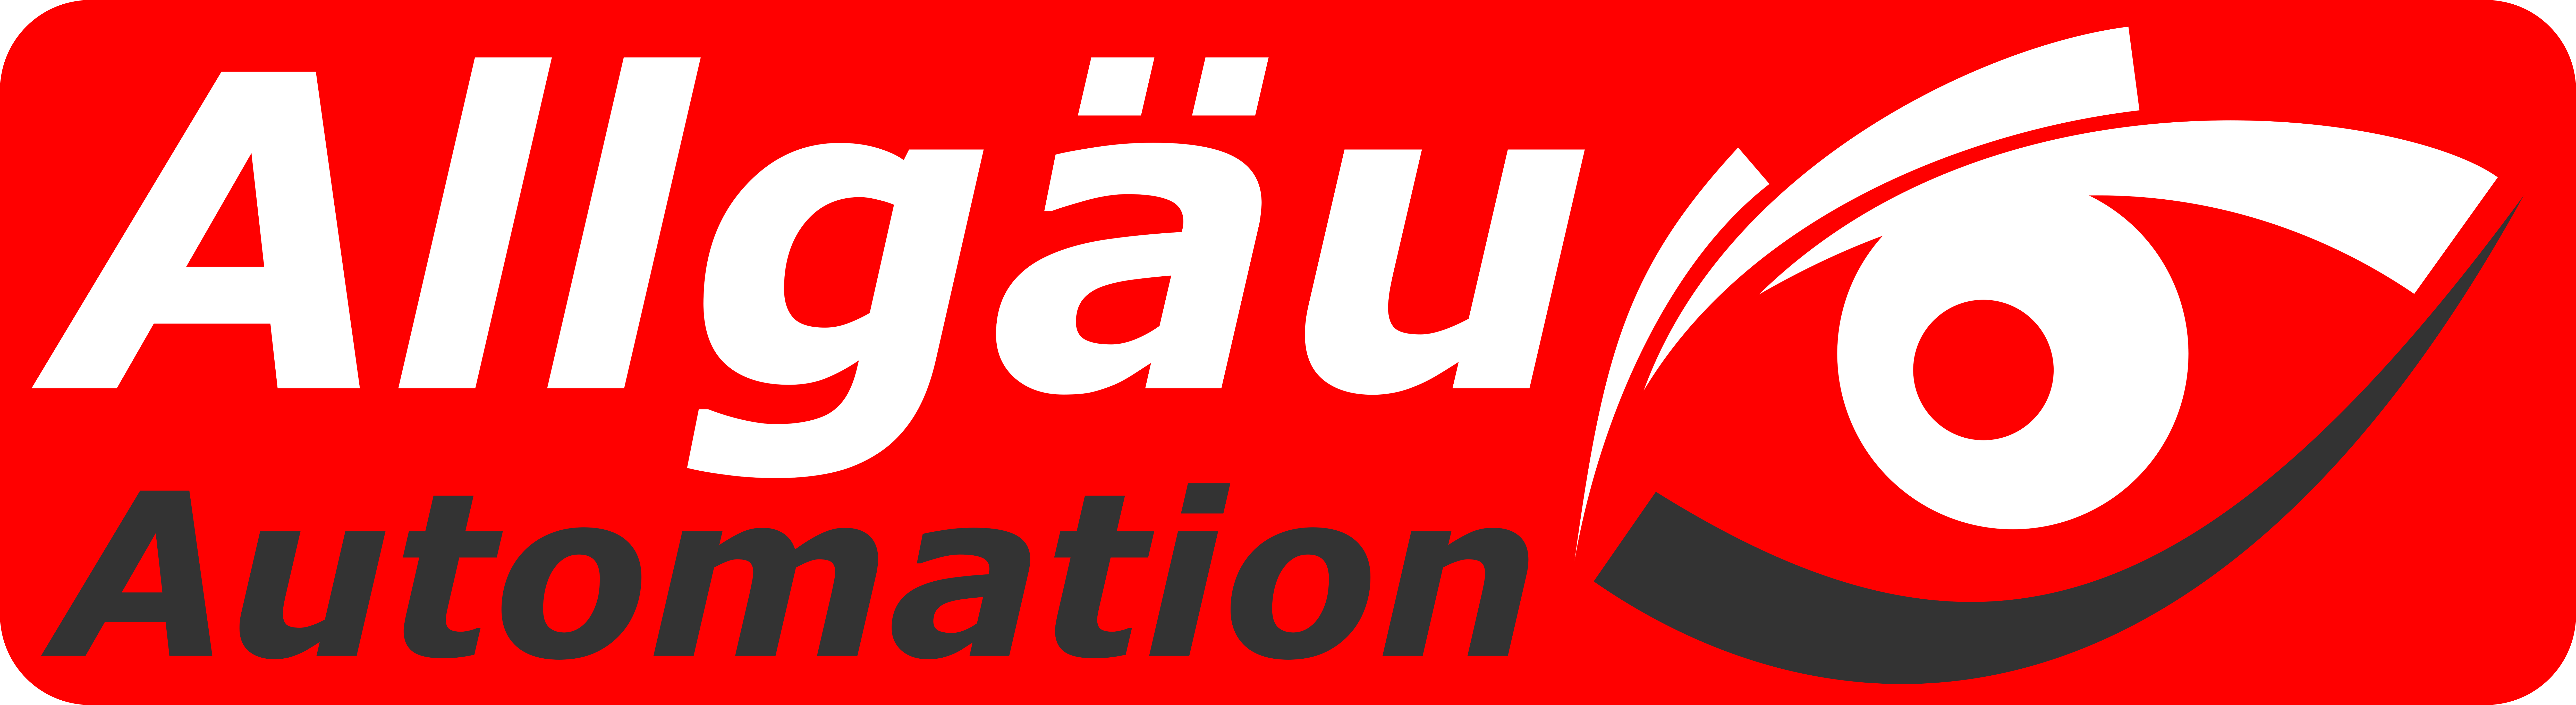 Allgäu Automation